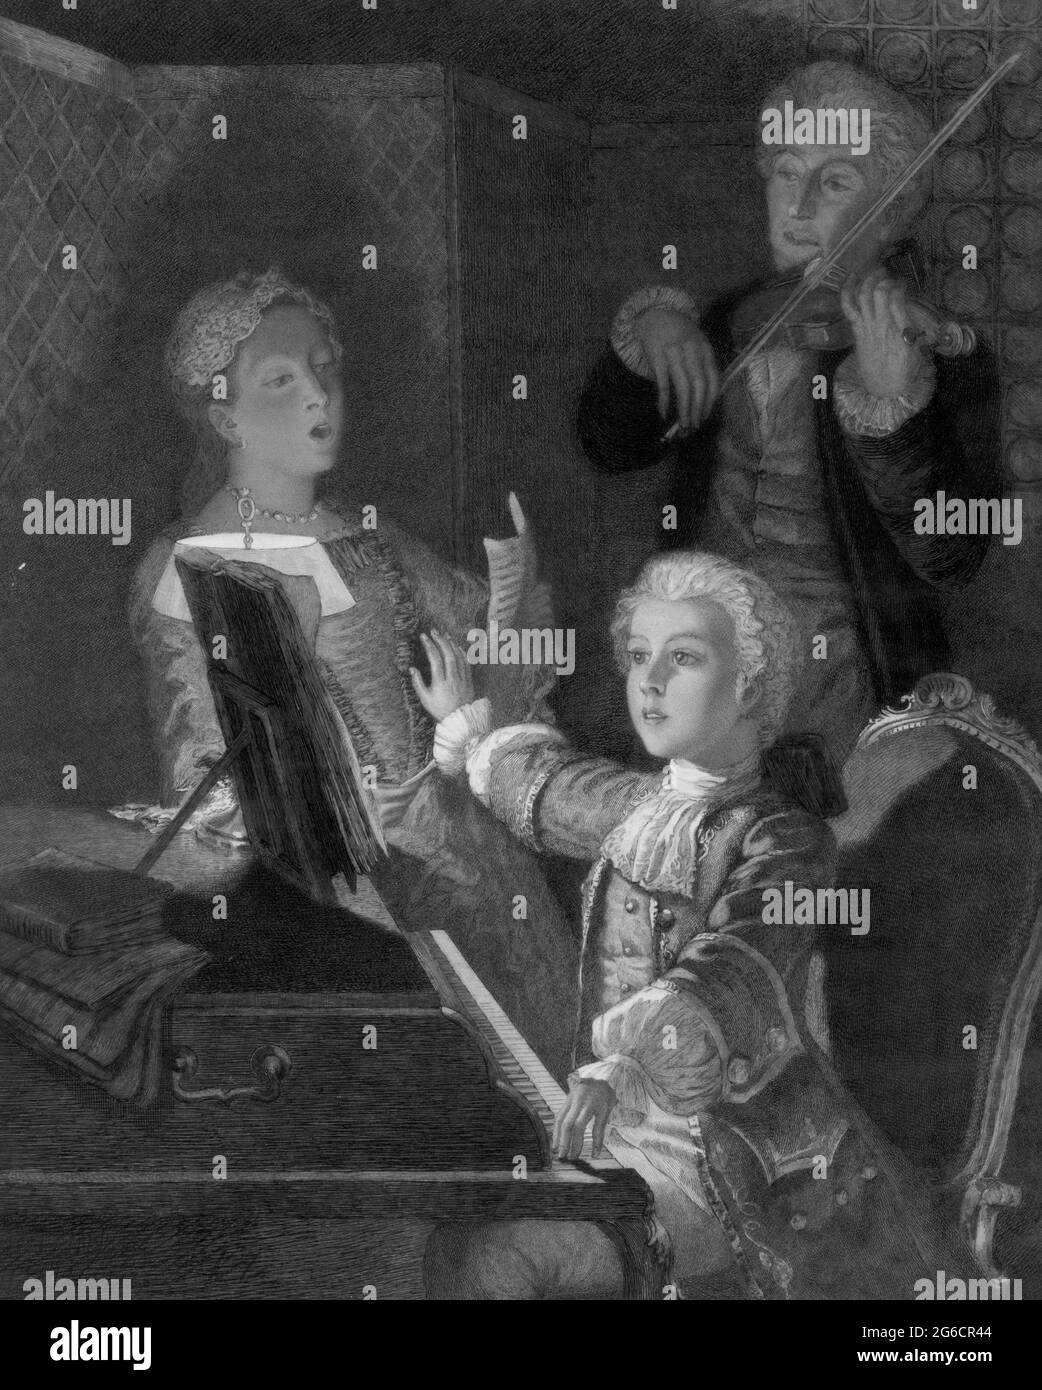 EUROPA - um 1762 - EIN junger Wolfgang Amadeus Mozart (1756-1791) probt seine XII. Messe - Foto: Geopix/J Scherrer Stockfoto